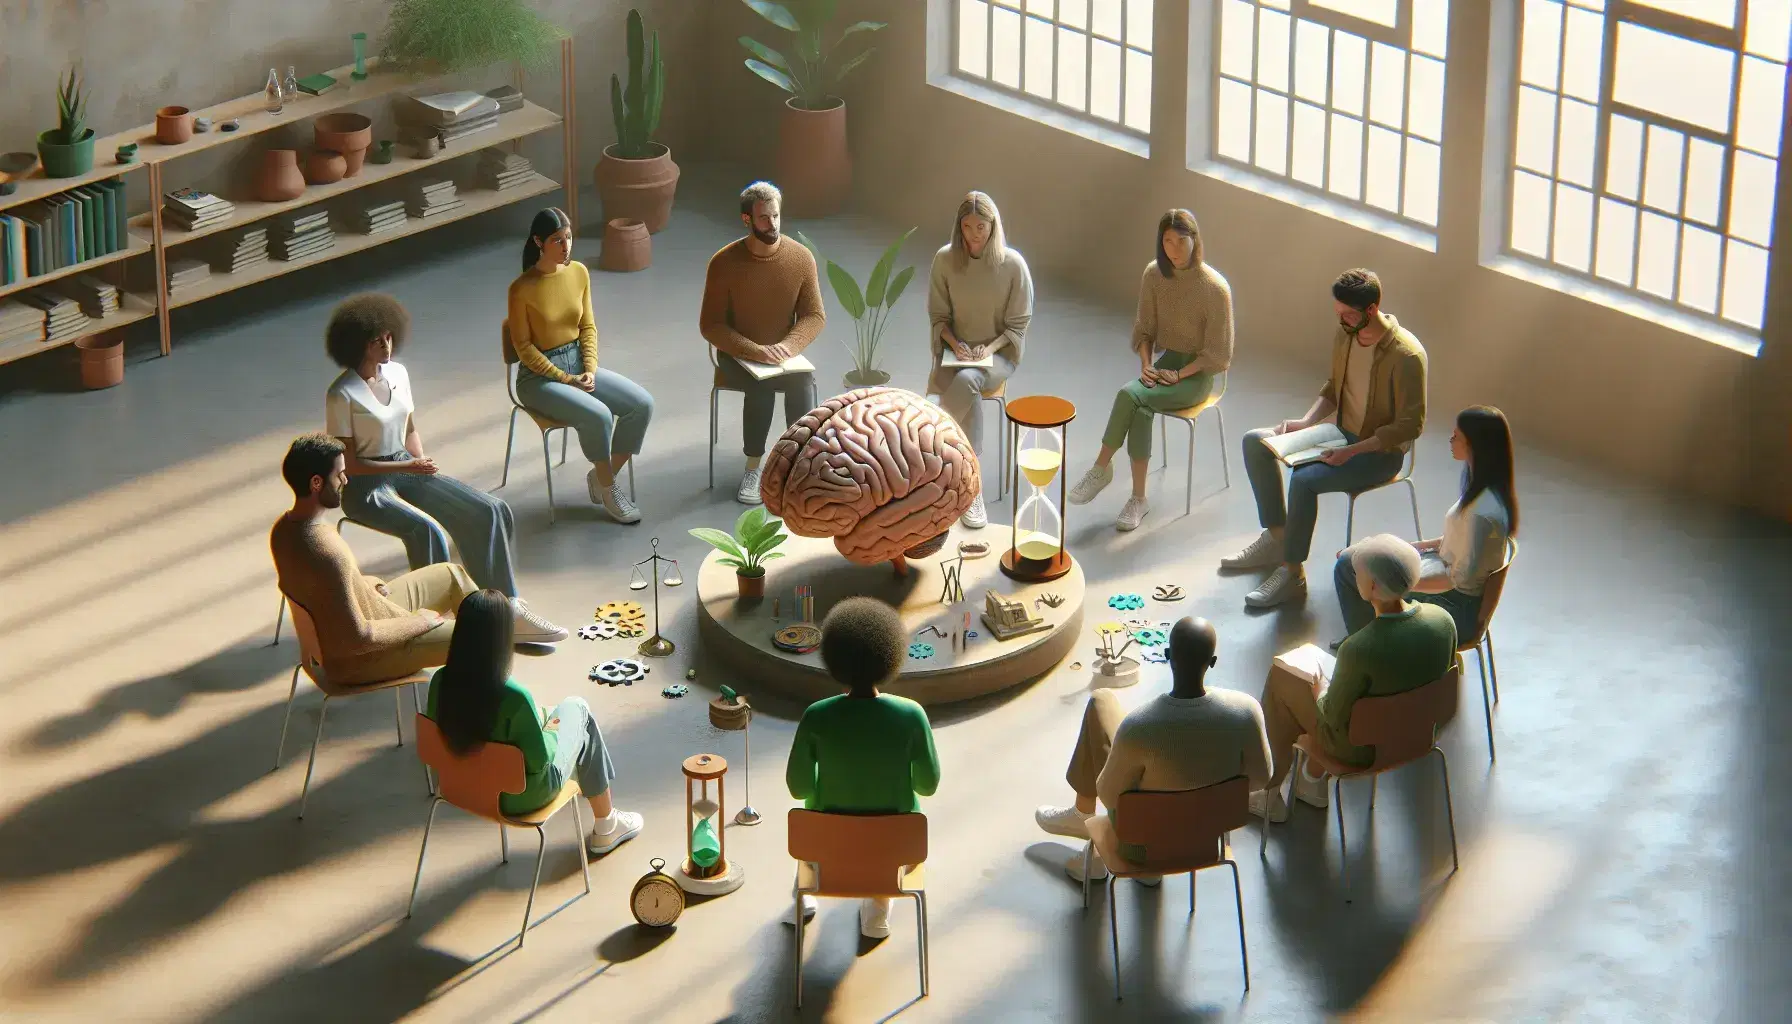 Grupo diverso de personas sentadas en círculo alrededor de una mesa con modelo de cerebro humano, reloj de arena, rompecabezas y planta, en una sala iluminada naturalmente.